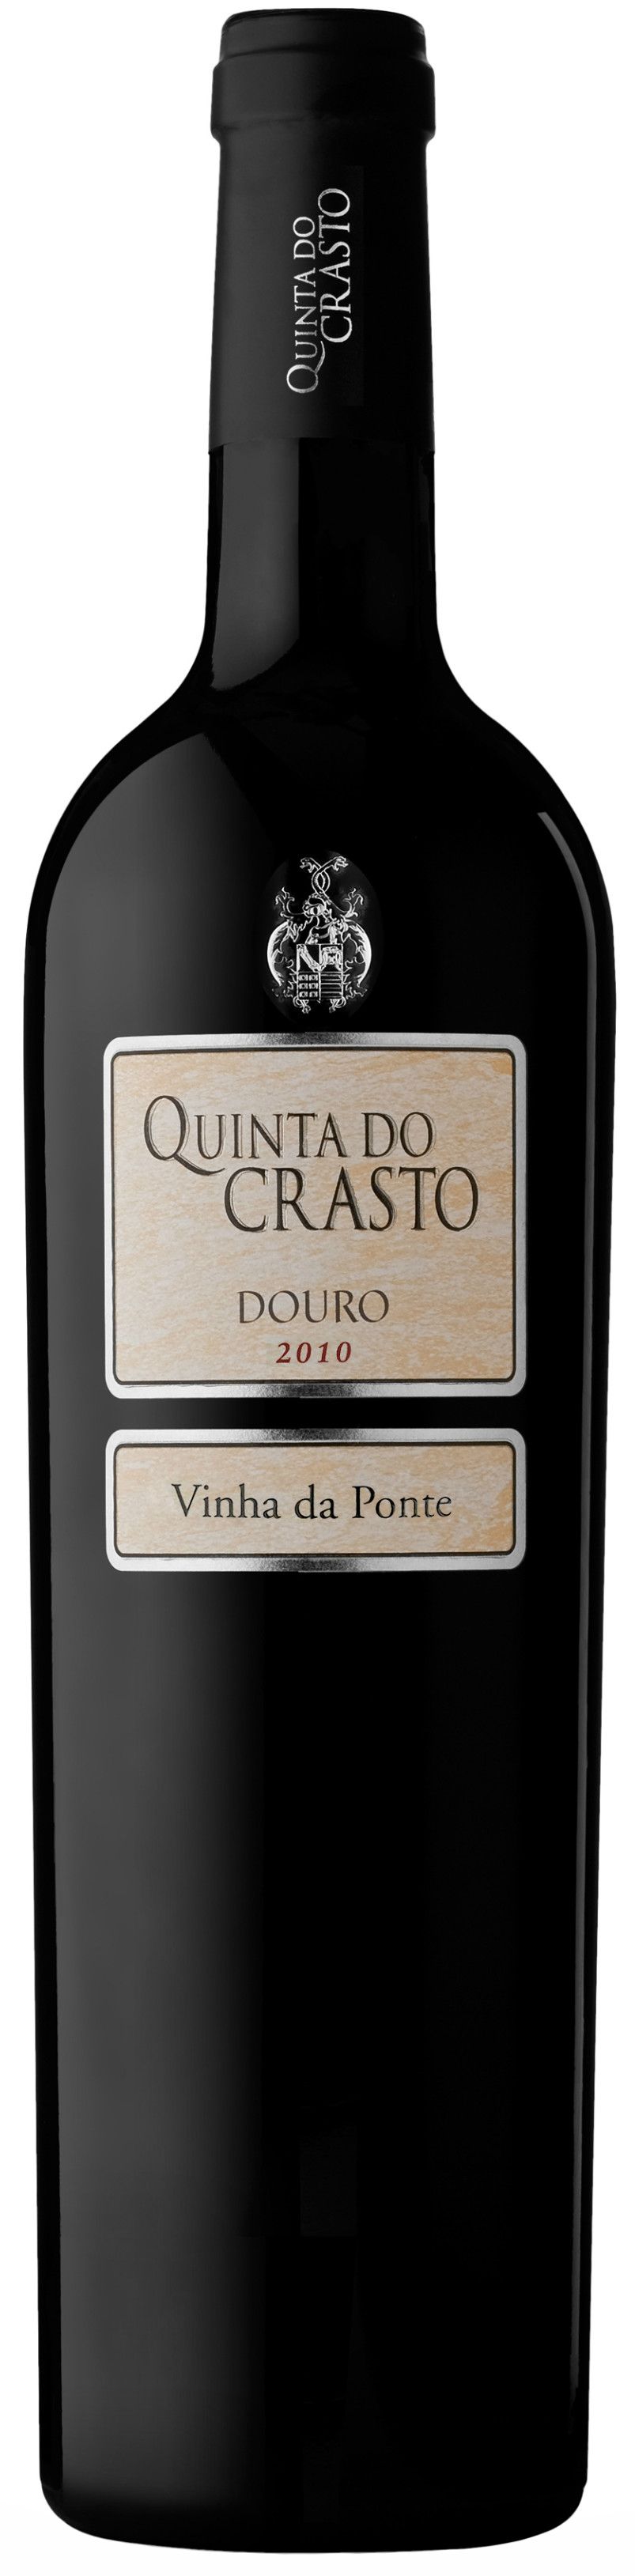 Quinta Do Crasto, Vinha Da Ponte, 2010